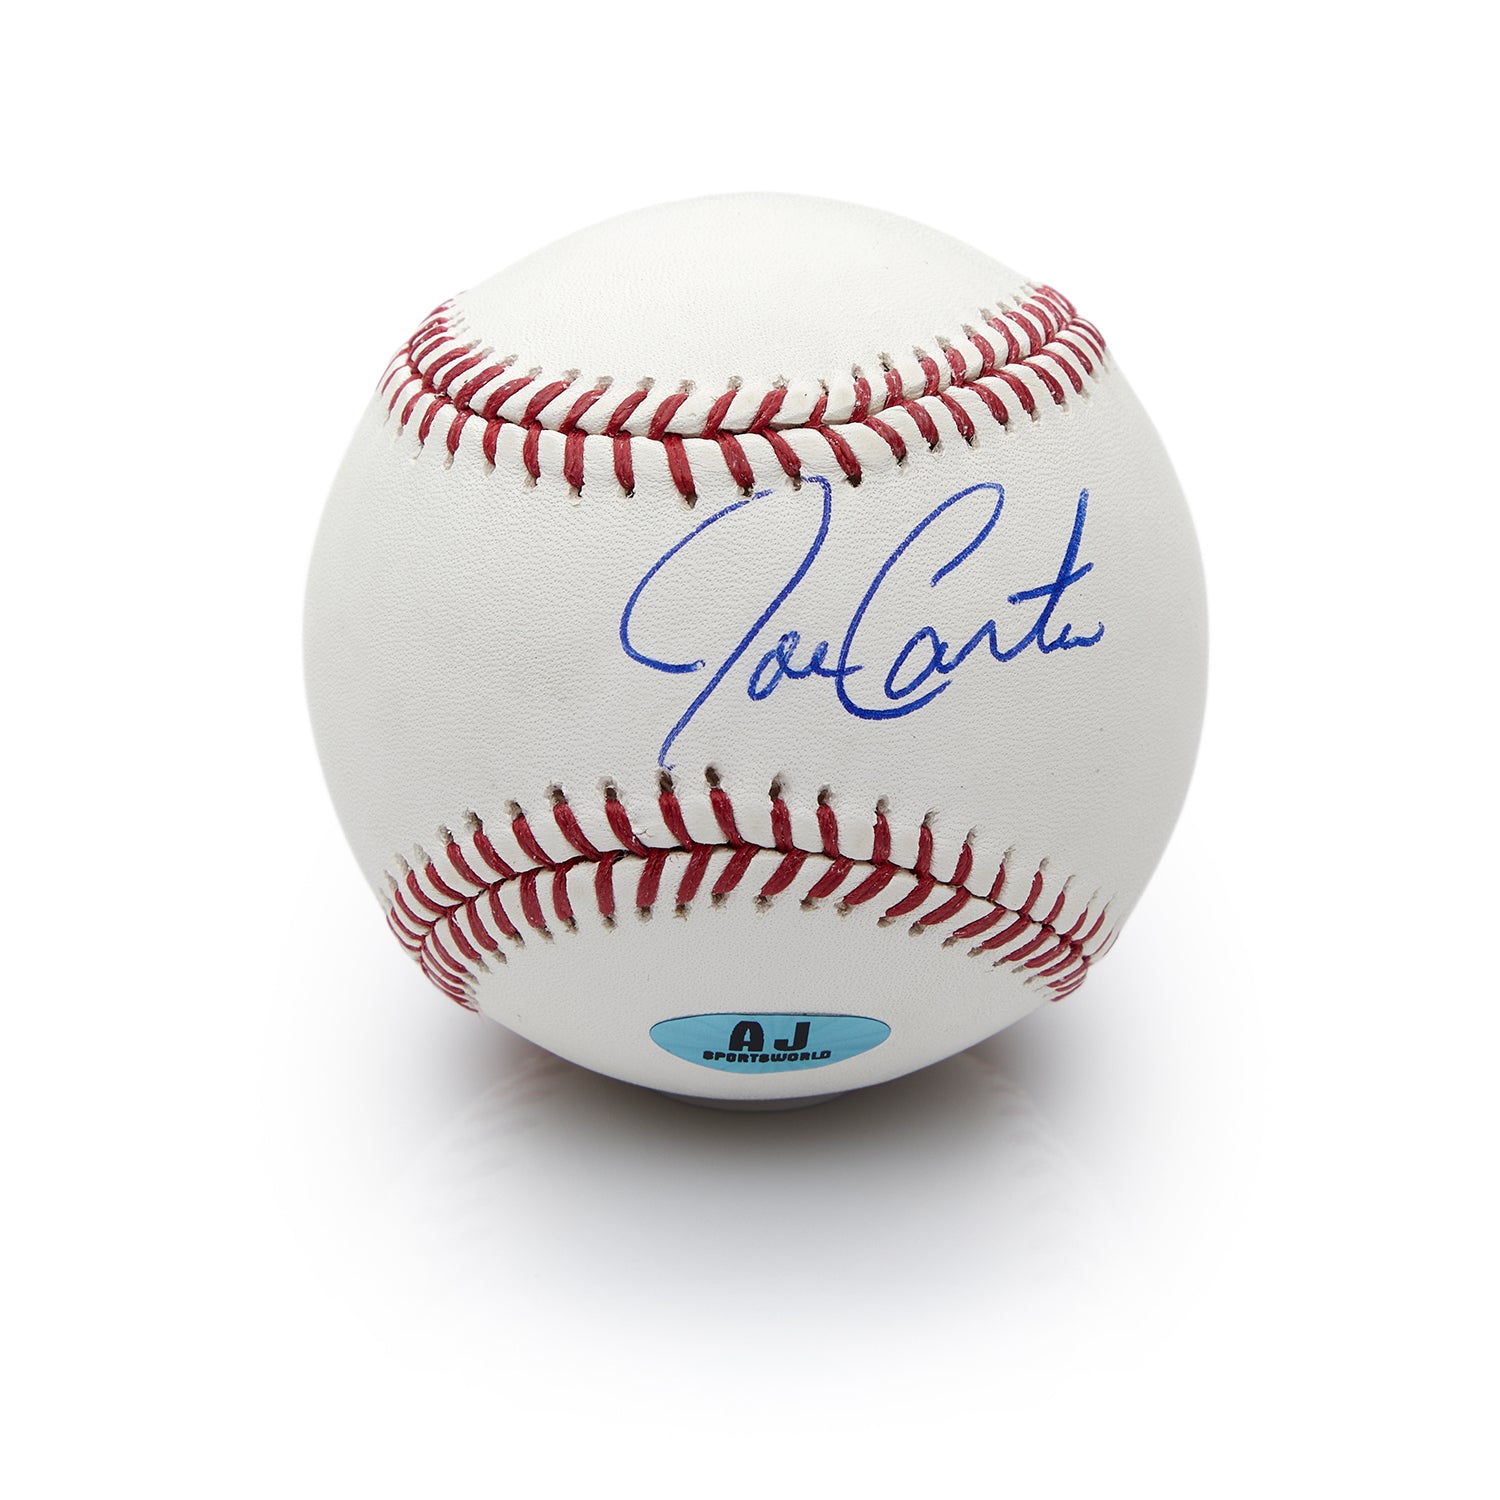 Joe Carter Autographed MLB Official Major League Baseball